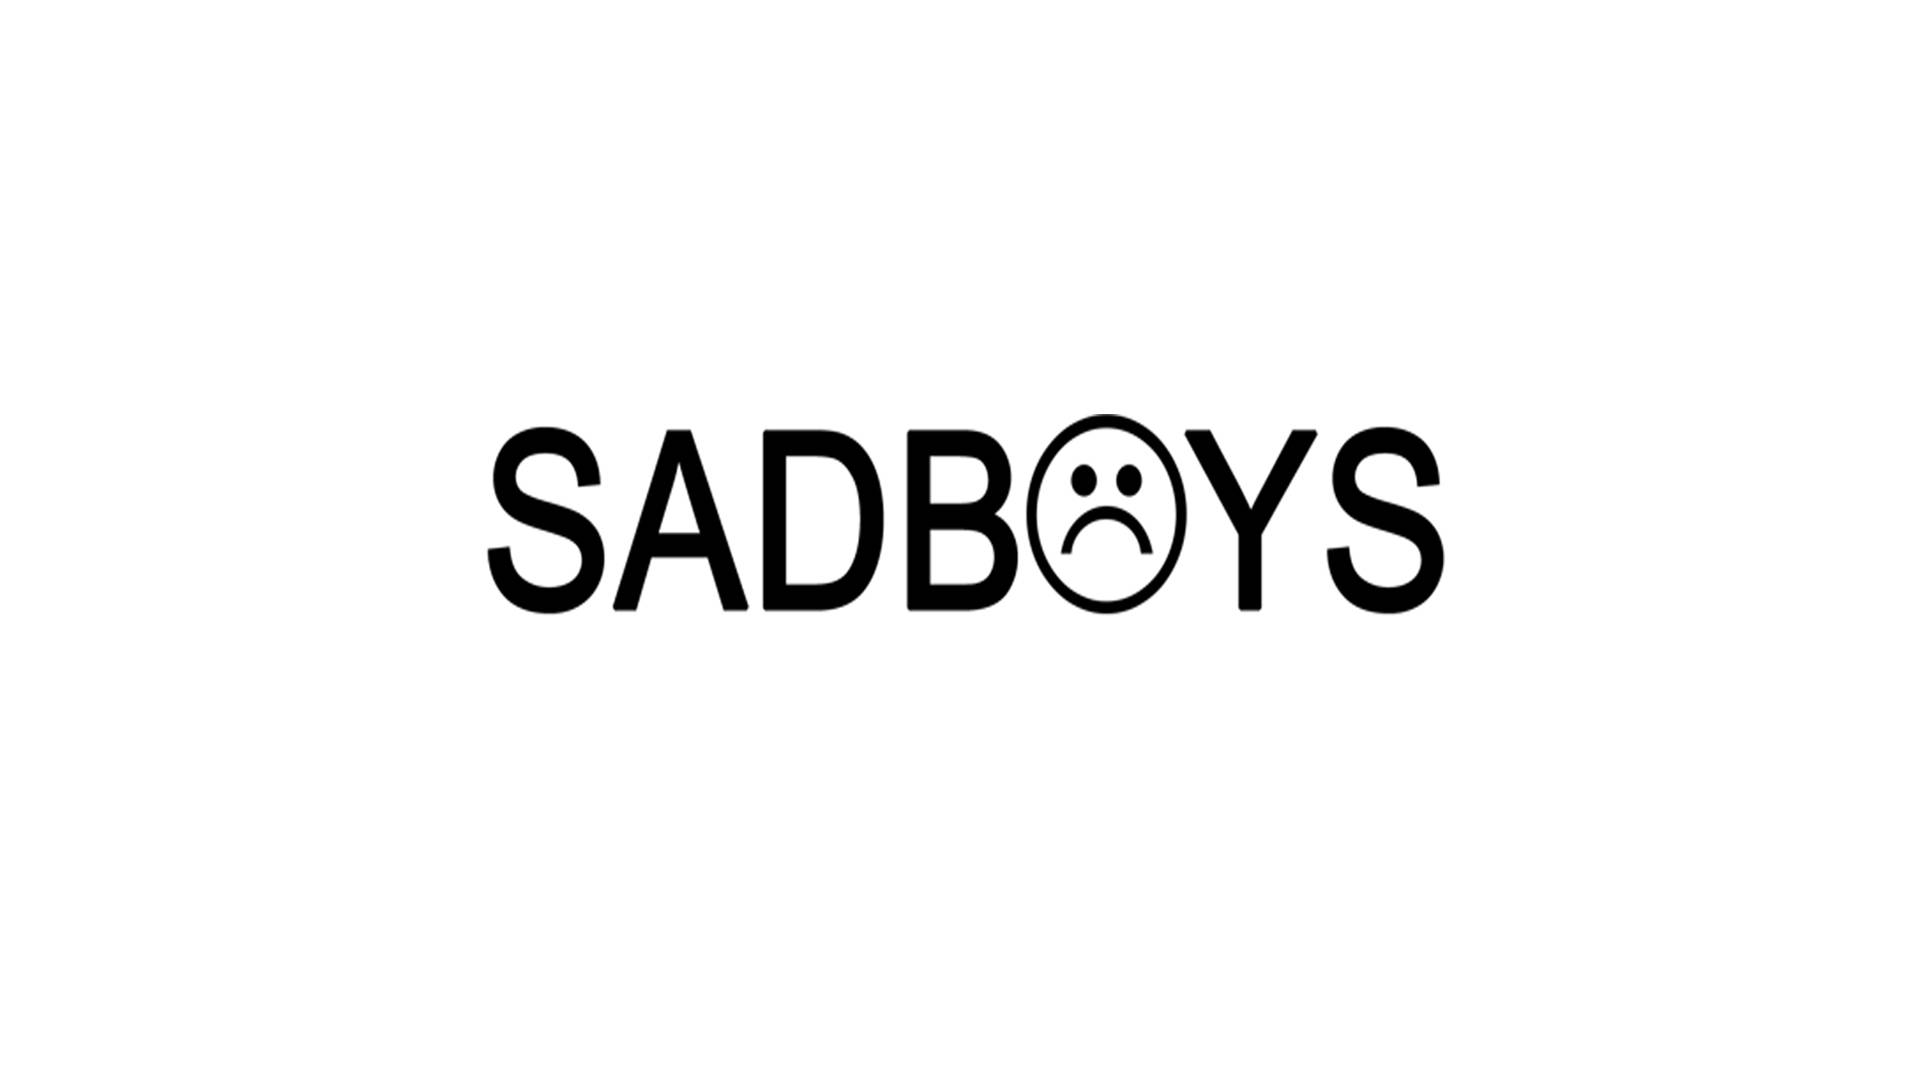 Black Sad Boys Text Background